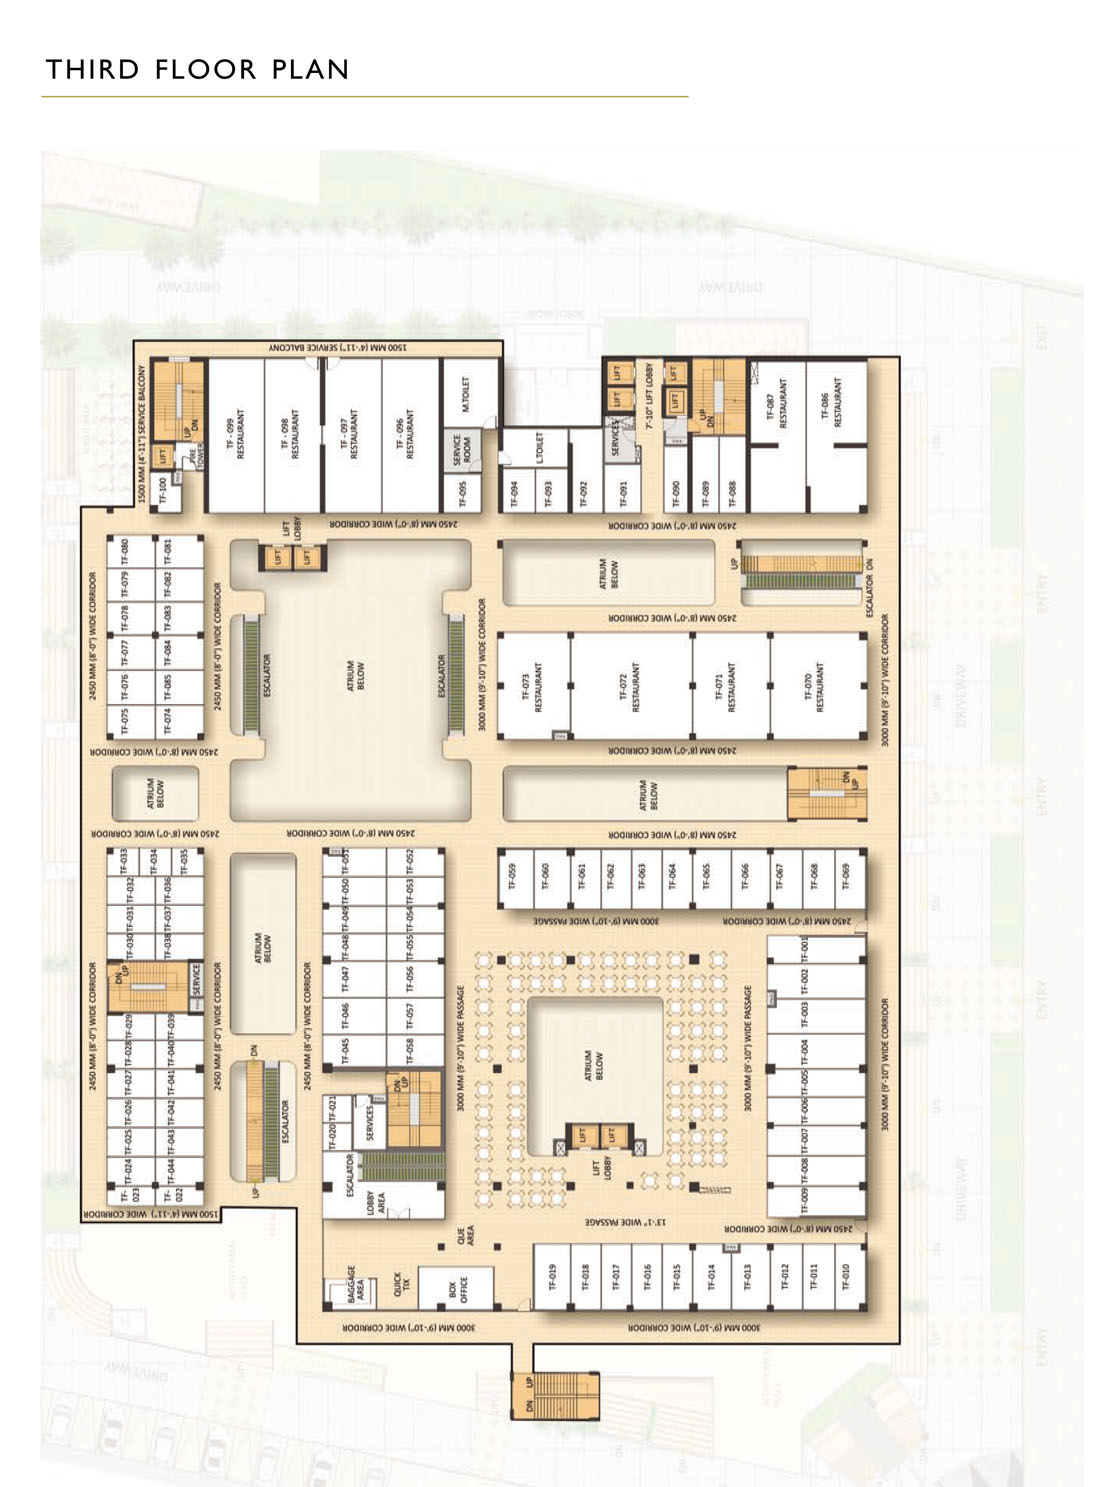 Third Floor Plan | Food Court | Restaurants